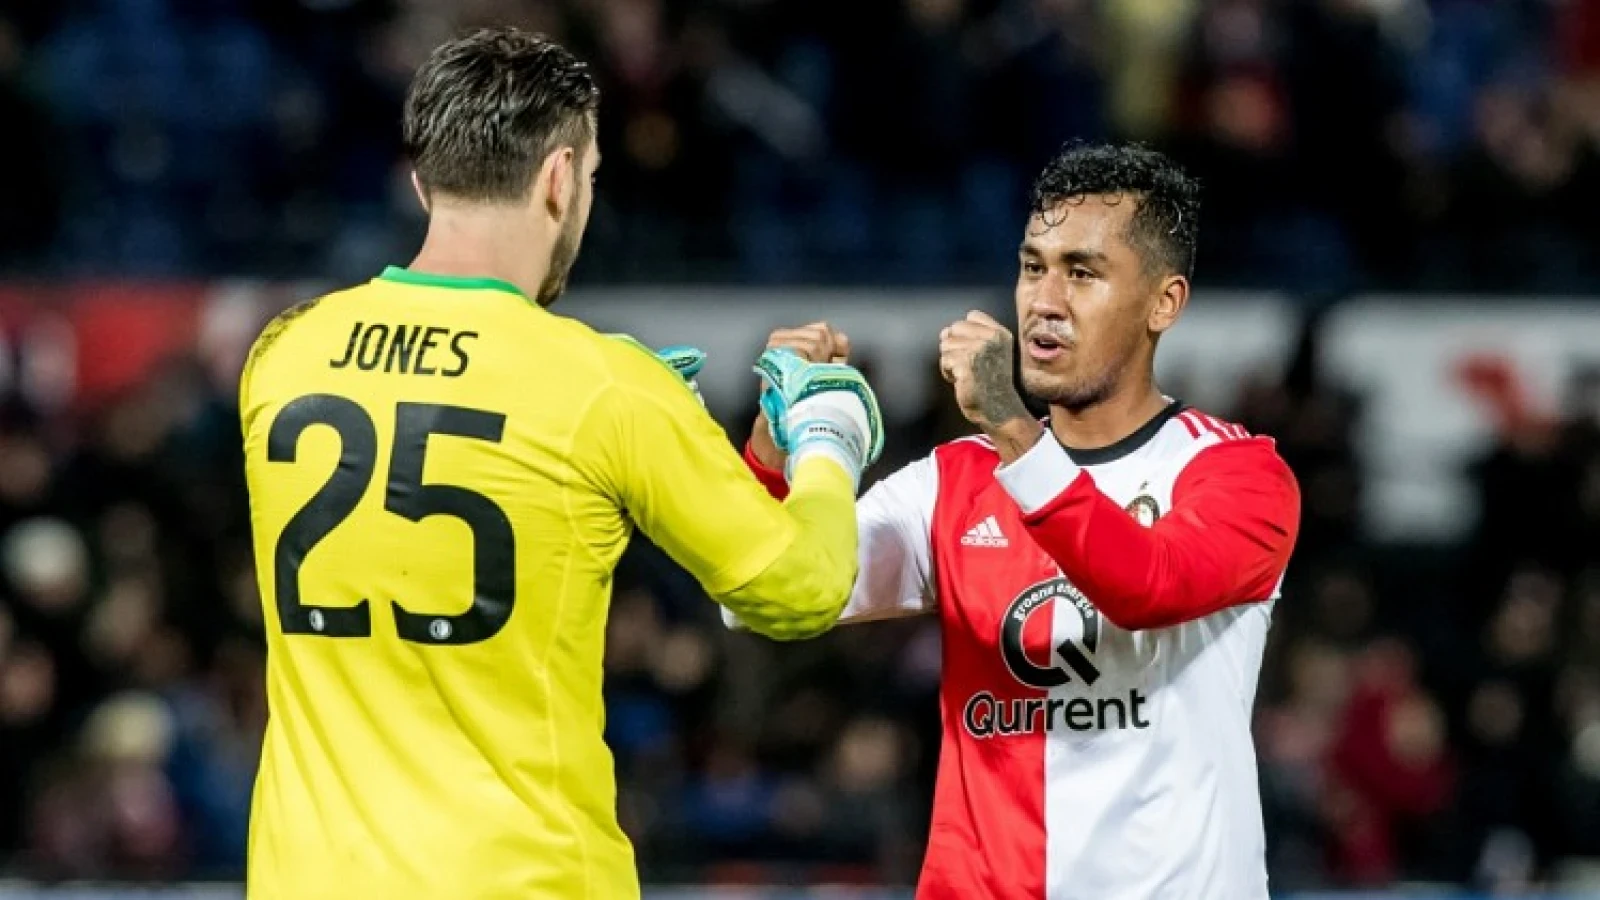 Toekomst doelman onduidelijk: 'Wat wil Feyenoord?'